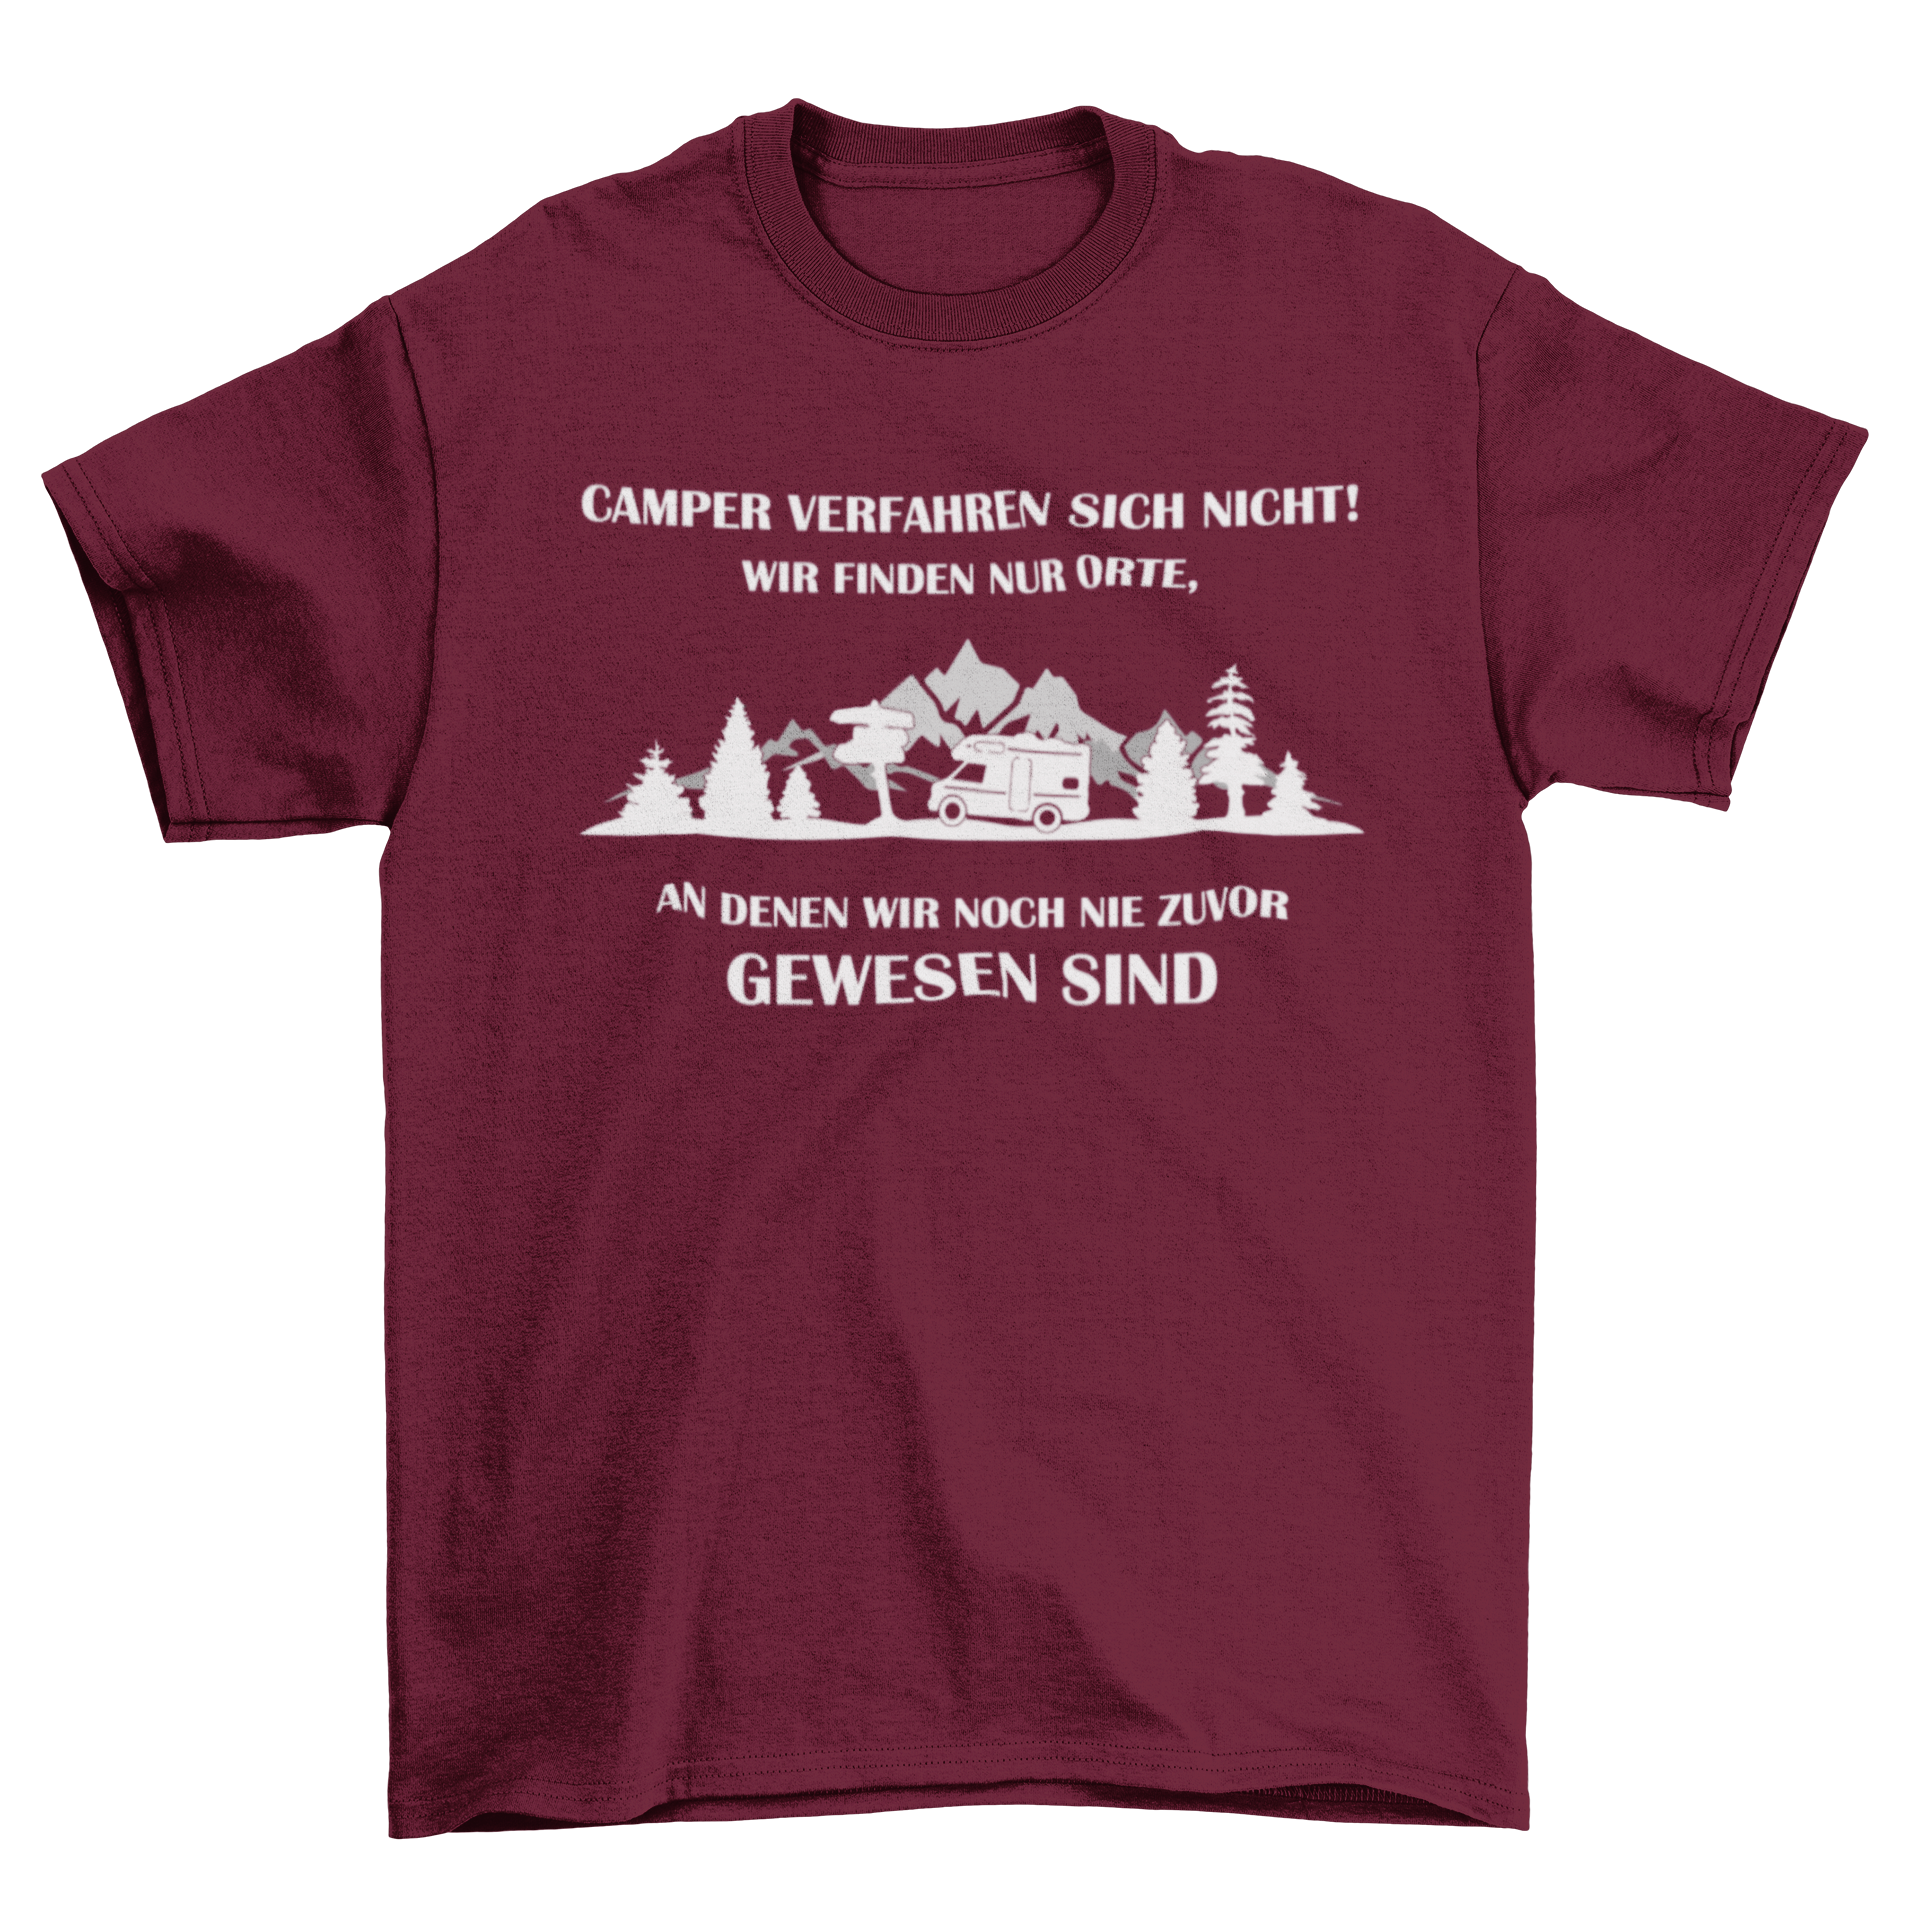 Camper verfahren sich nicht  - T-Shirt